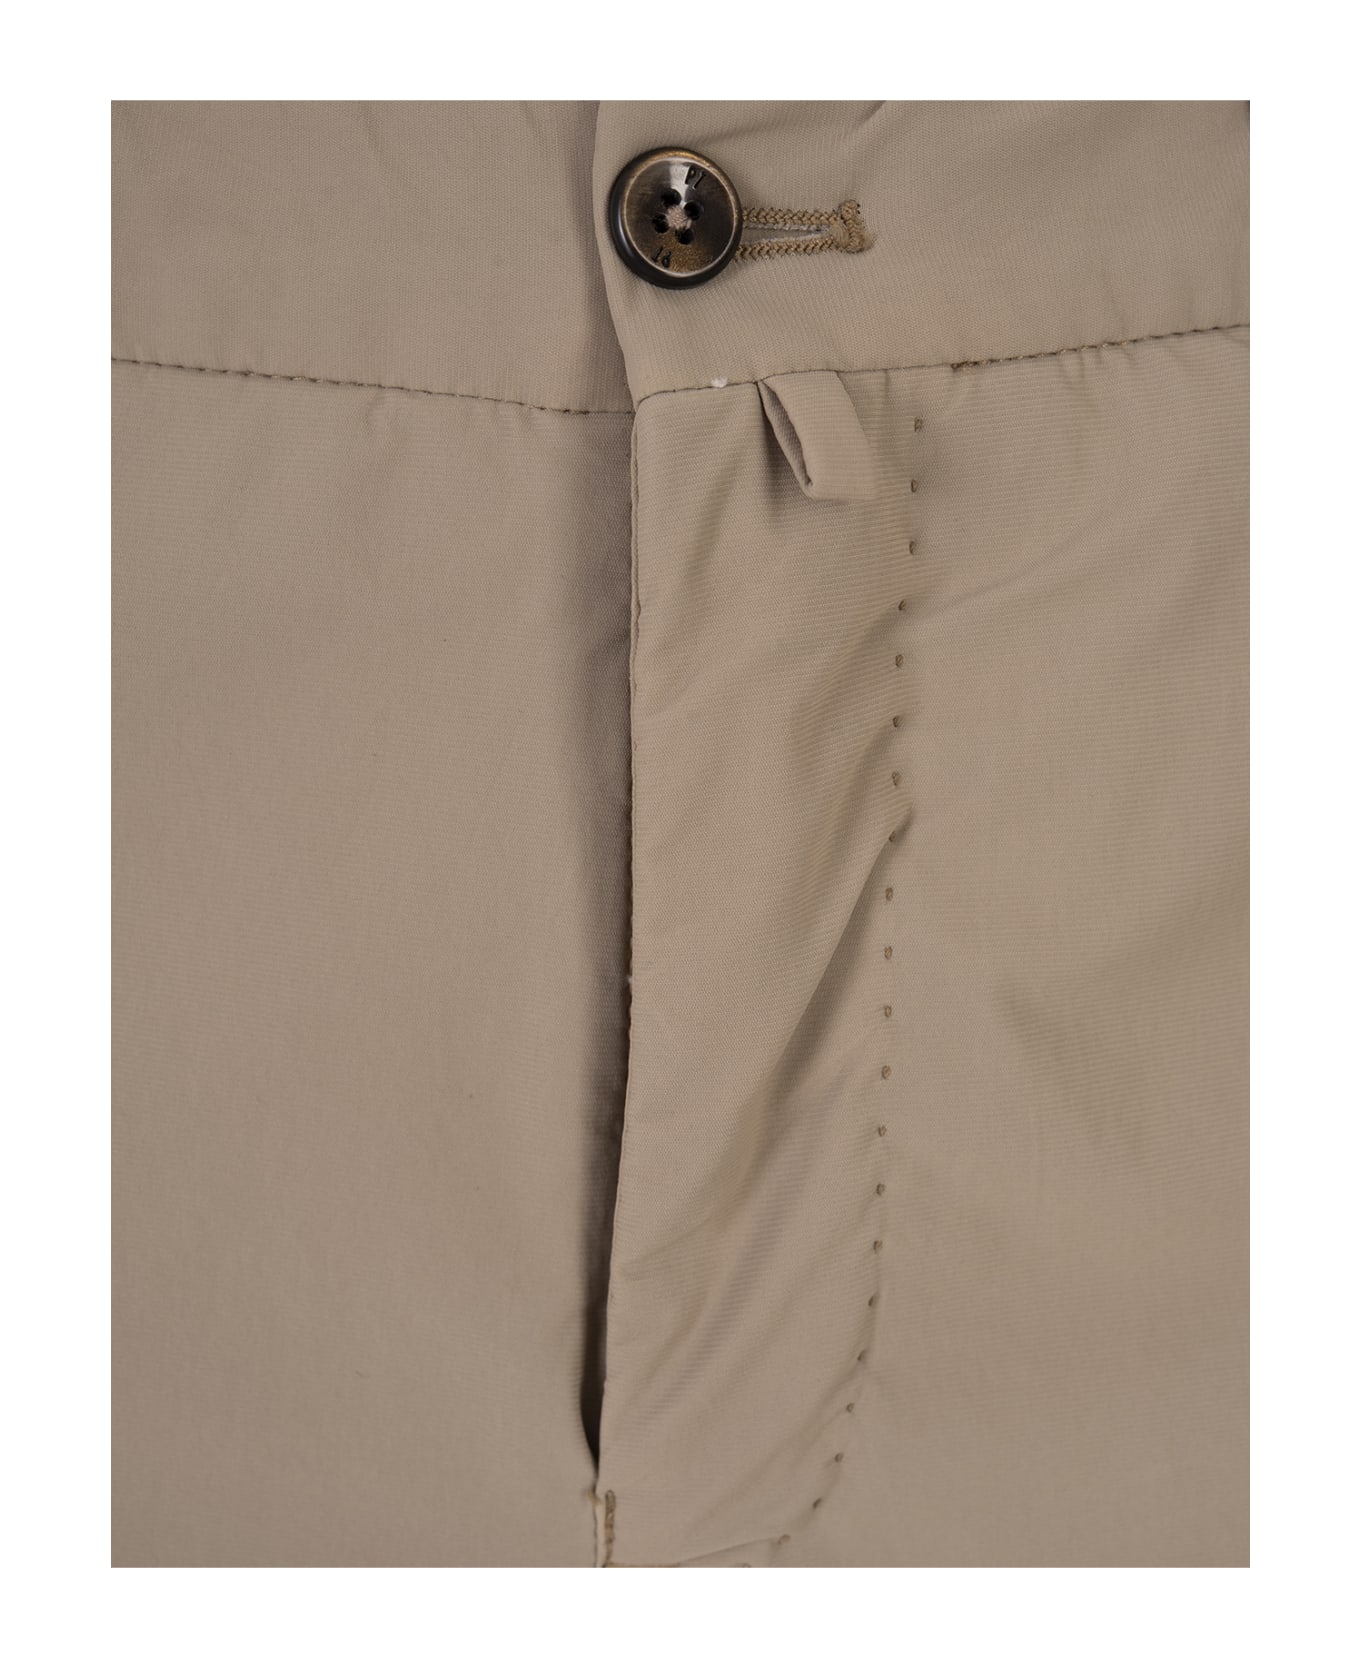 PT Torino Dark Beige Stretch Cotton Shorts - Brown